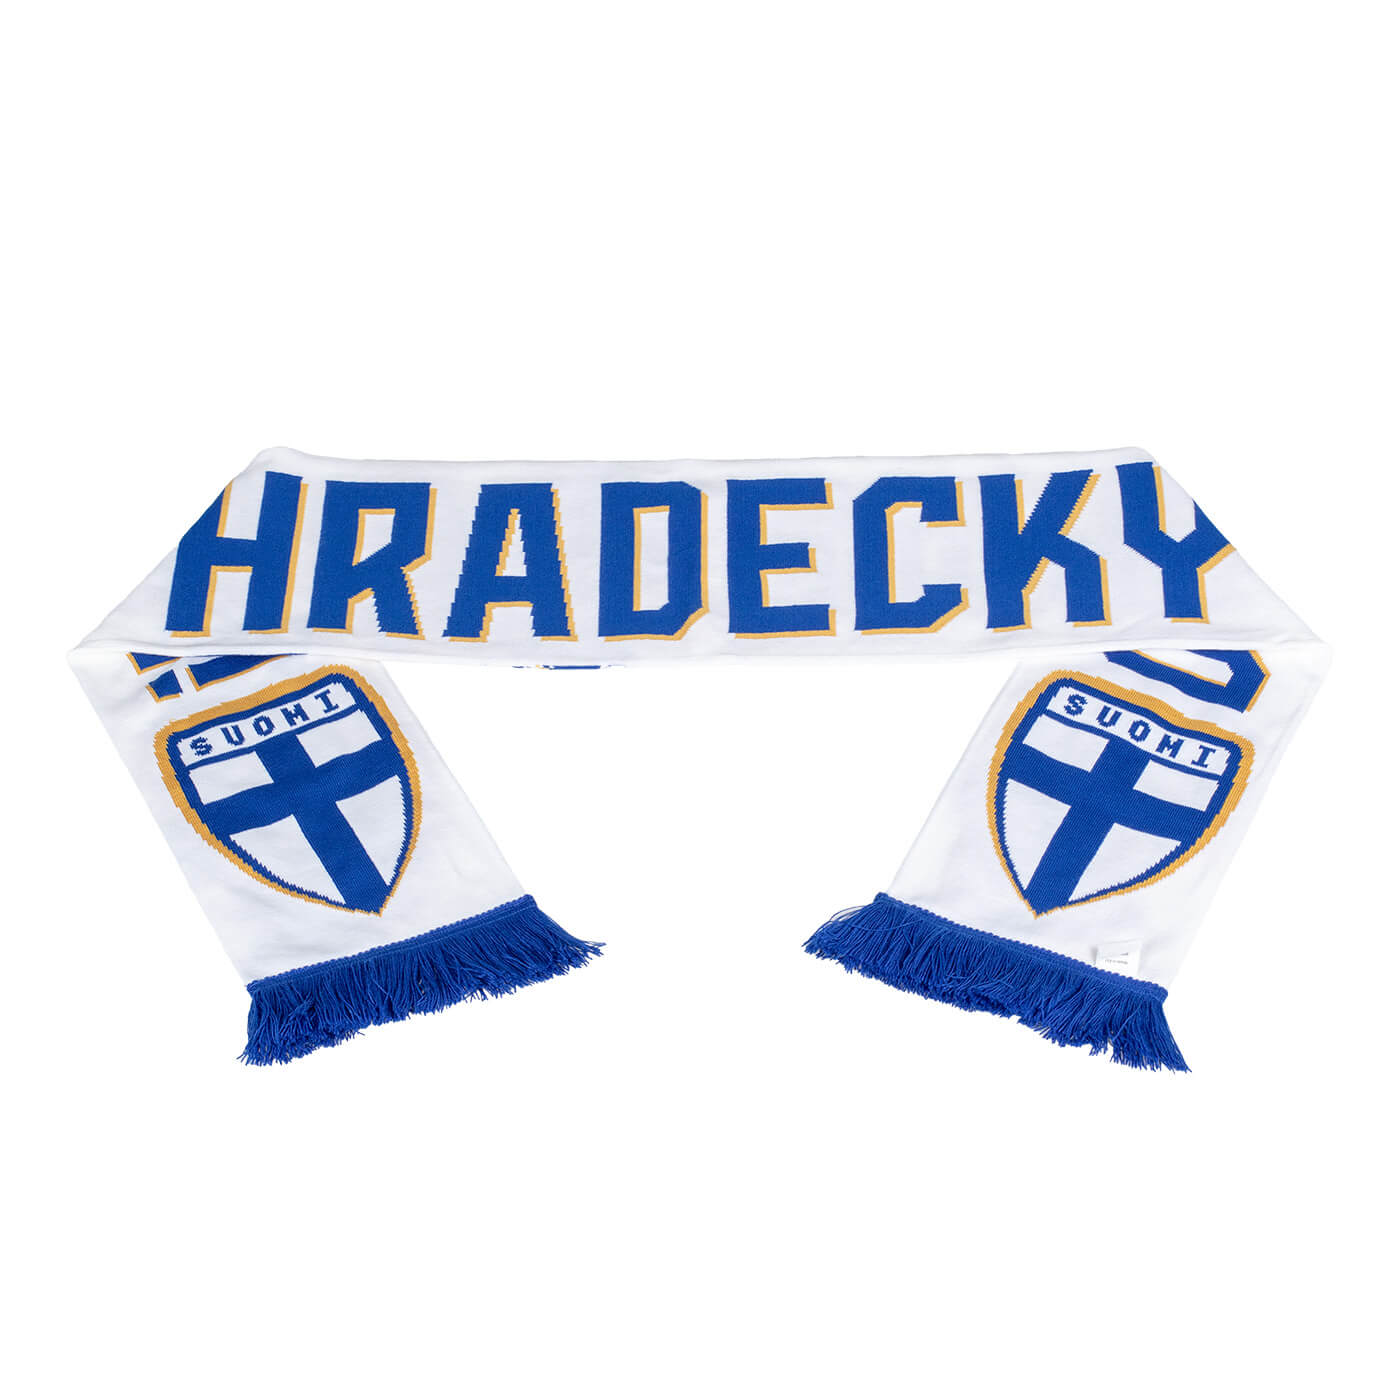 Lukas Hradecky, neck scarf